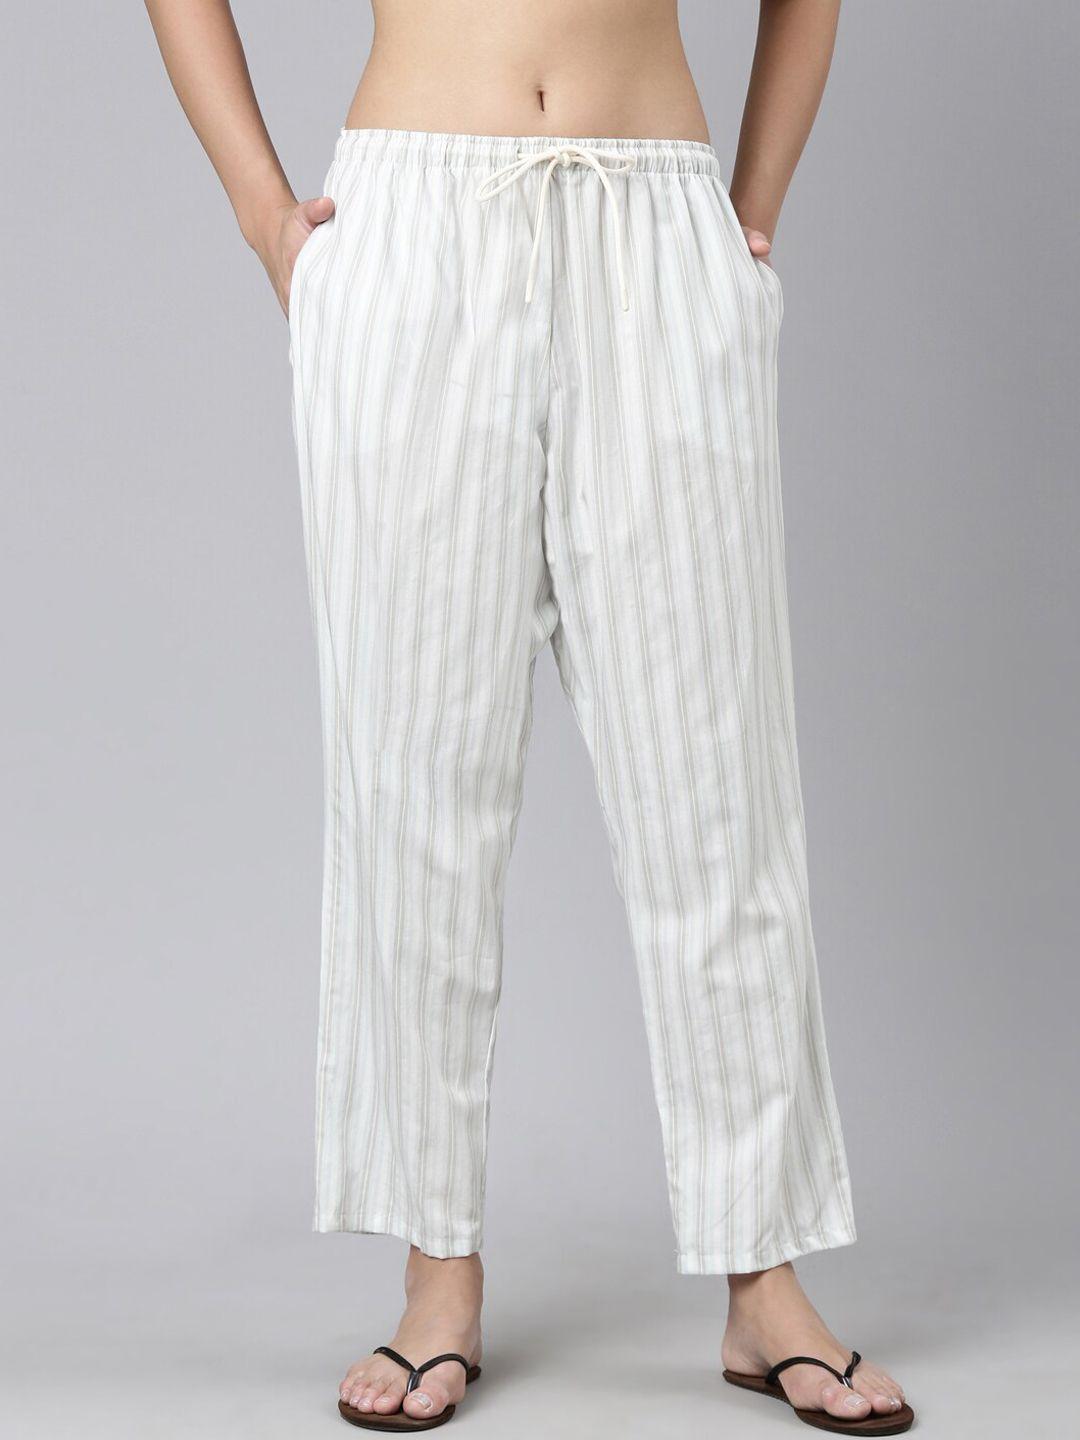 enamor women striped cotton lounge pants